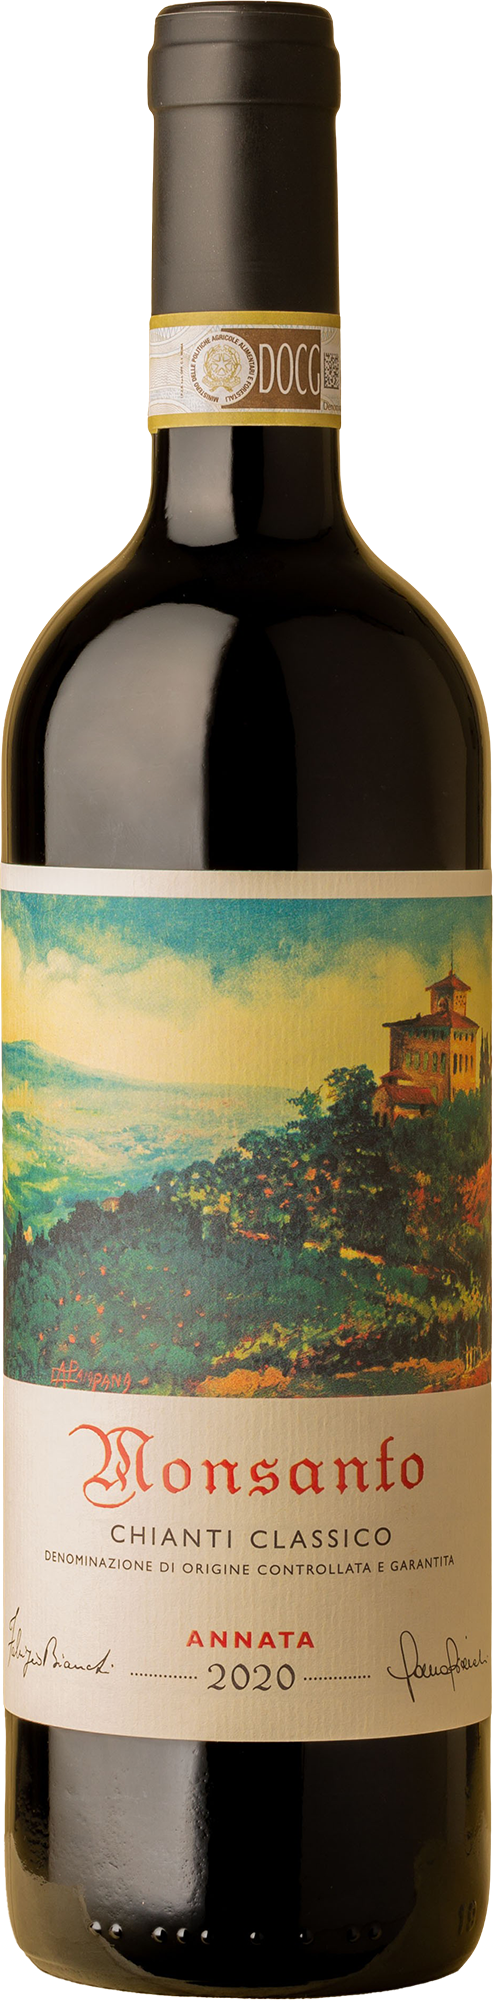 Castello Monsanto - Chianti Classico 2020 Red Wine